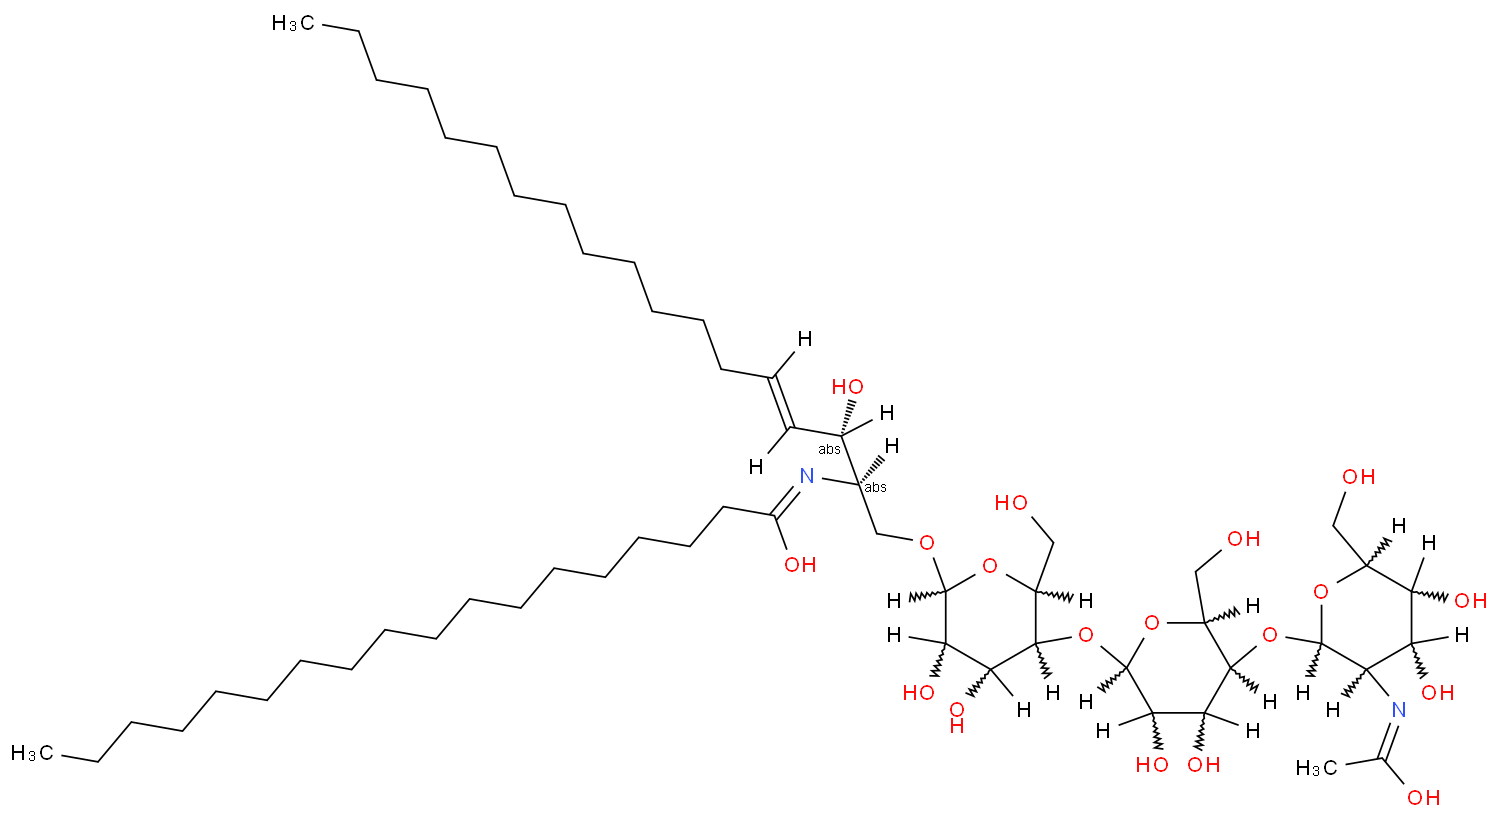 Ceramide,1-O-[O-2-(acetylamino)-2-deoxy-b-D-galactopyranosyl-(1®4)-O-b-D-galactopyranosyl-(1®4)-b-D-glucopyranosyl]-